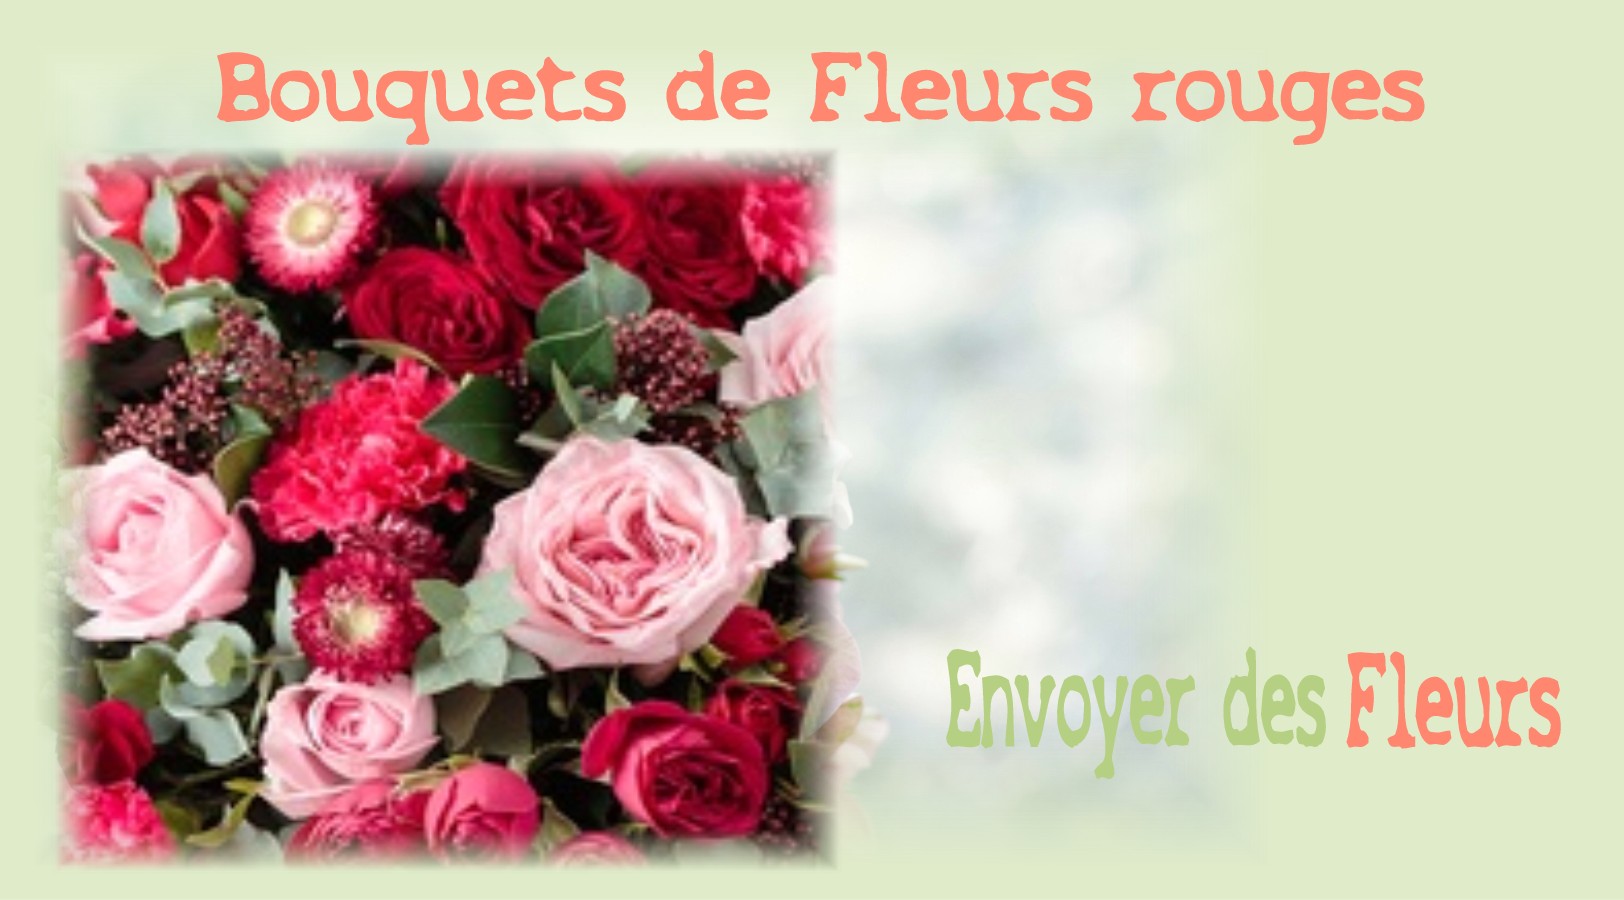 BOUQUETS DE FLEURS ROUGES - FLEURISTE BORDEAUX (33) - ENVOYER DES FLEURS